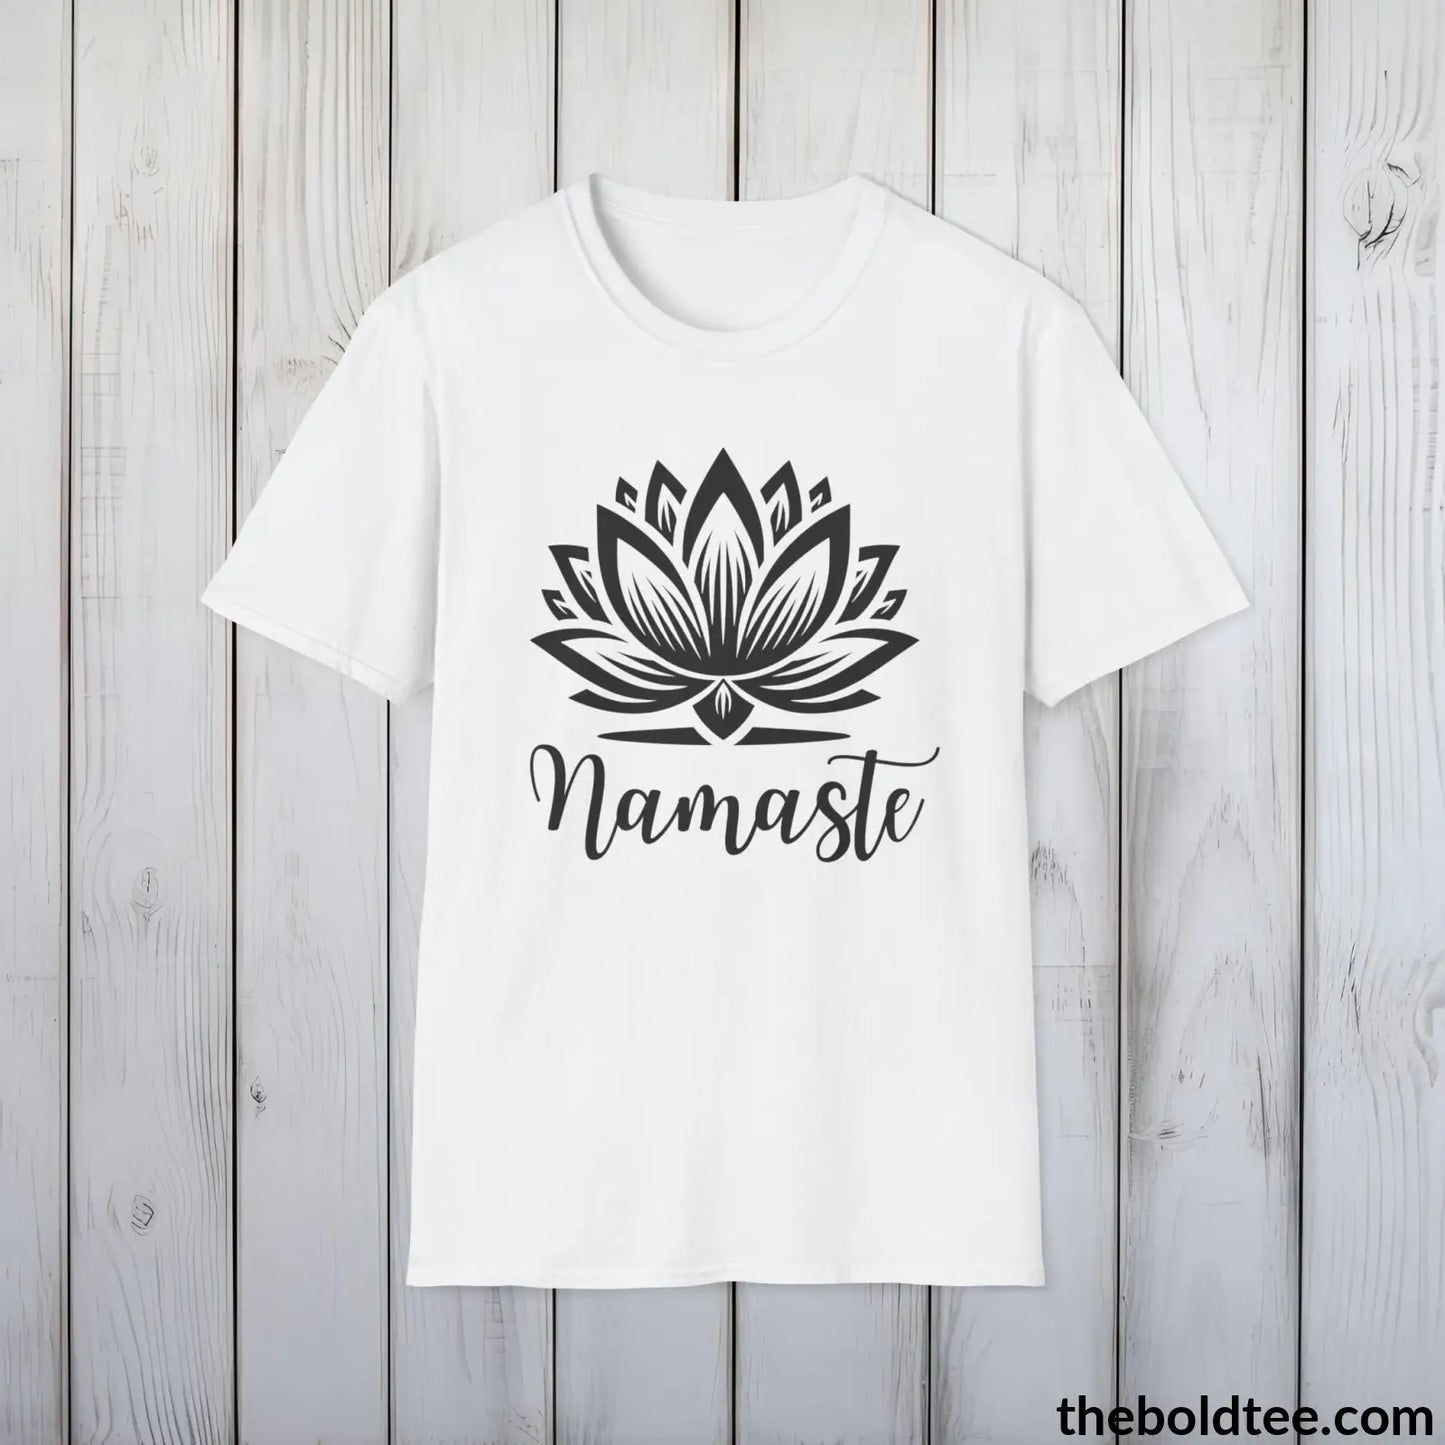 T-Shirt White / S Namaste Yoga Tee - Sustainable & Soft Cotton Crewneck Unisex T-Shirt - 9 Bold Colors